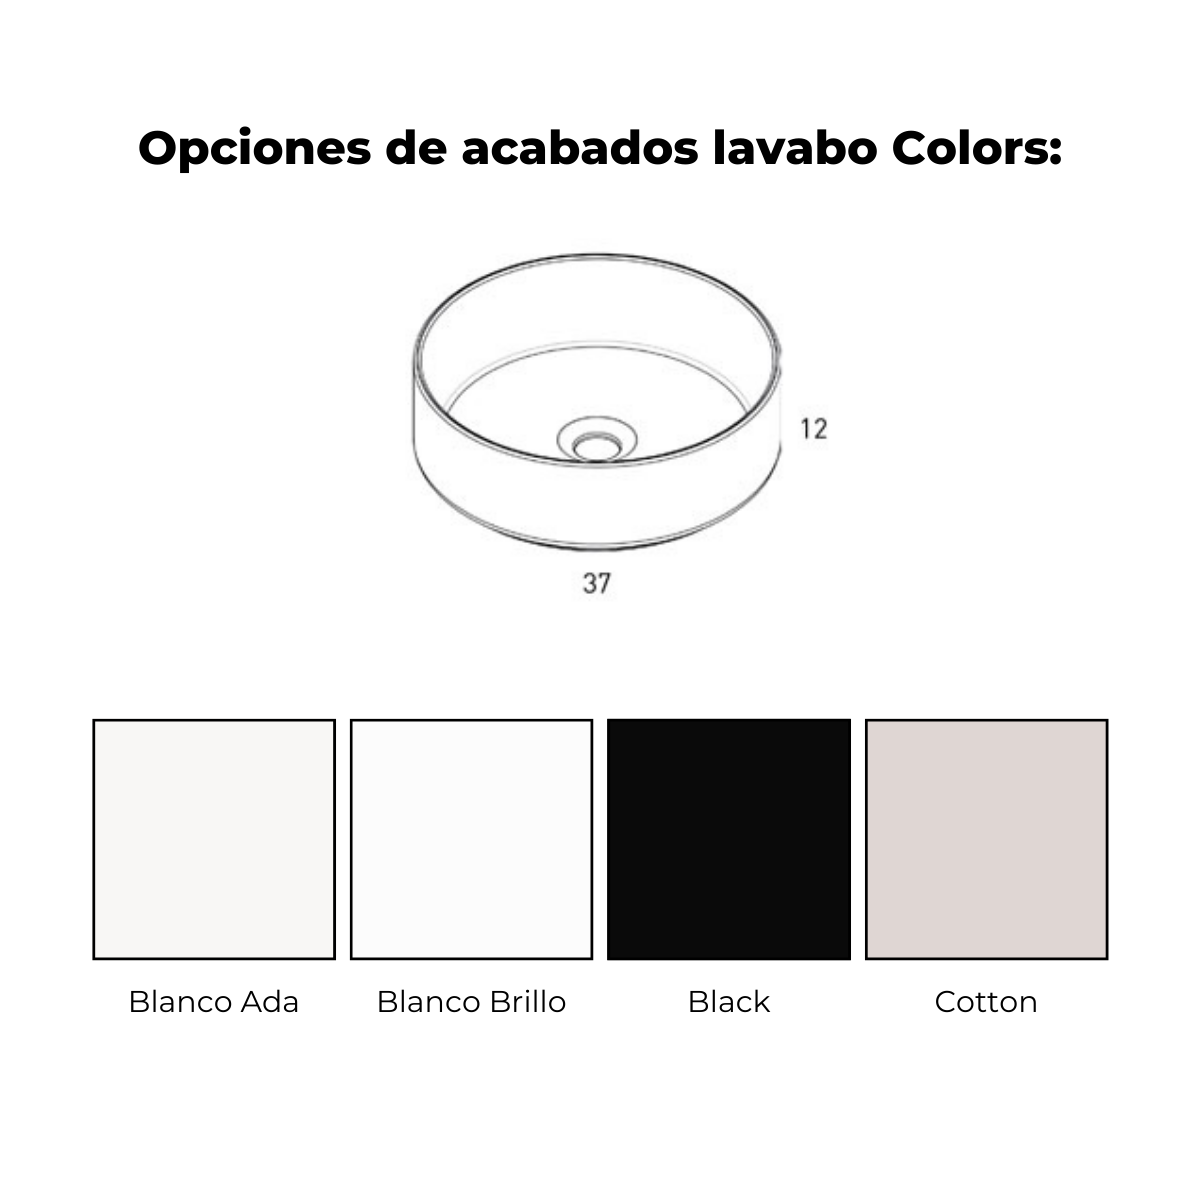 lavabo colors 2c cotton arco